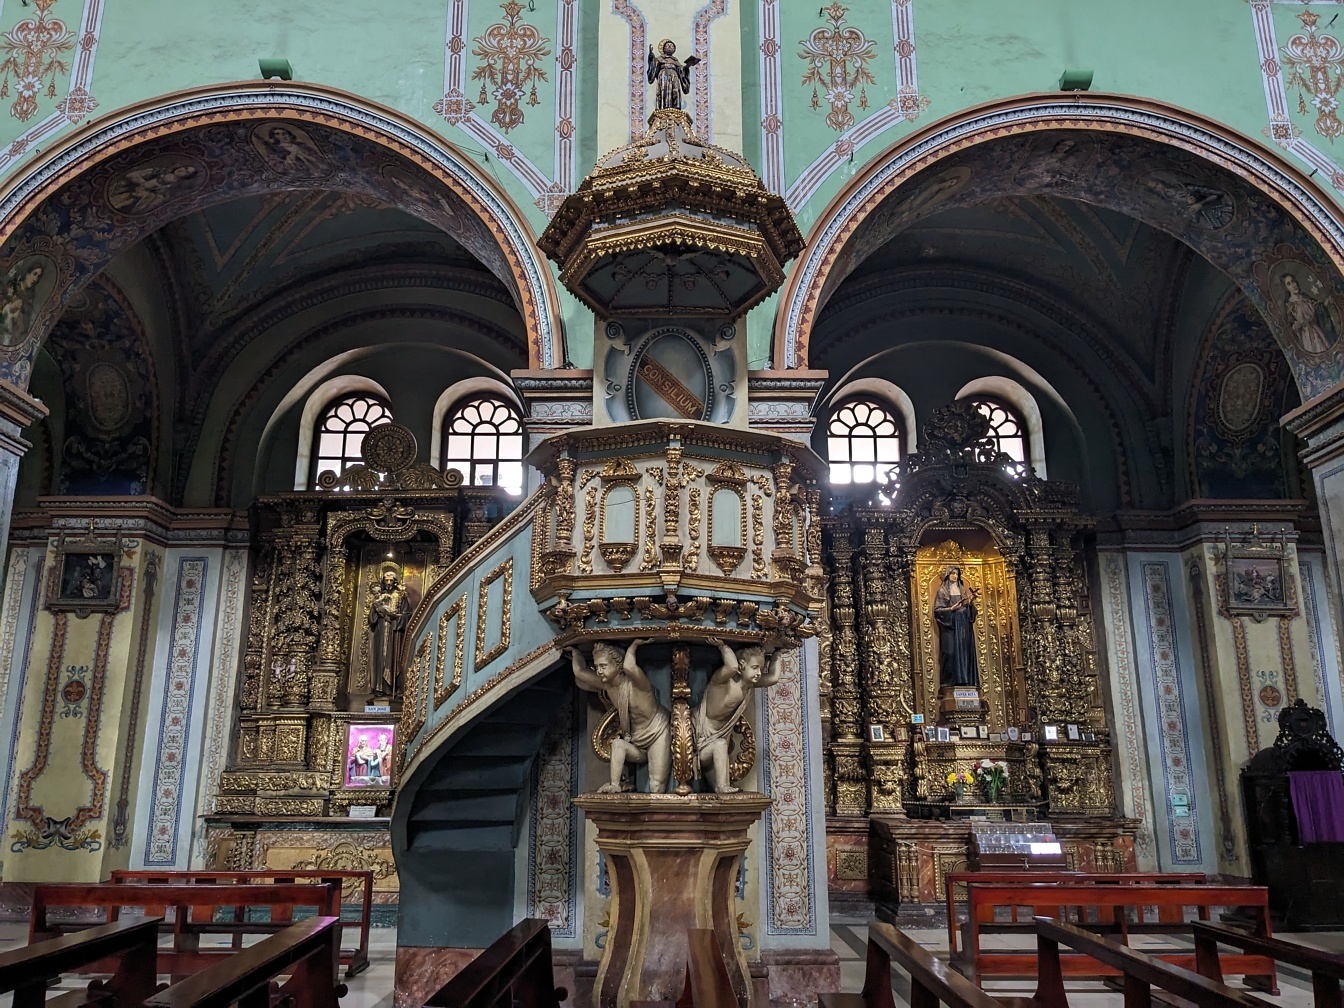 Interiør af romersk-katolske kirke med udsmykkede vindeltrappe i barok stil